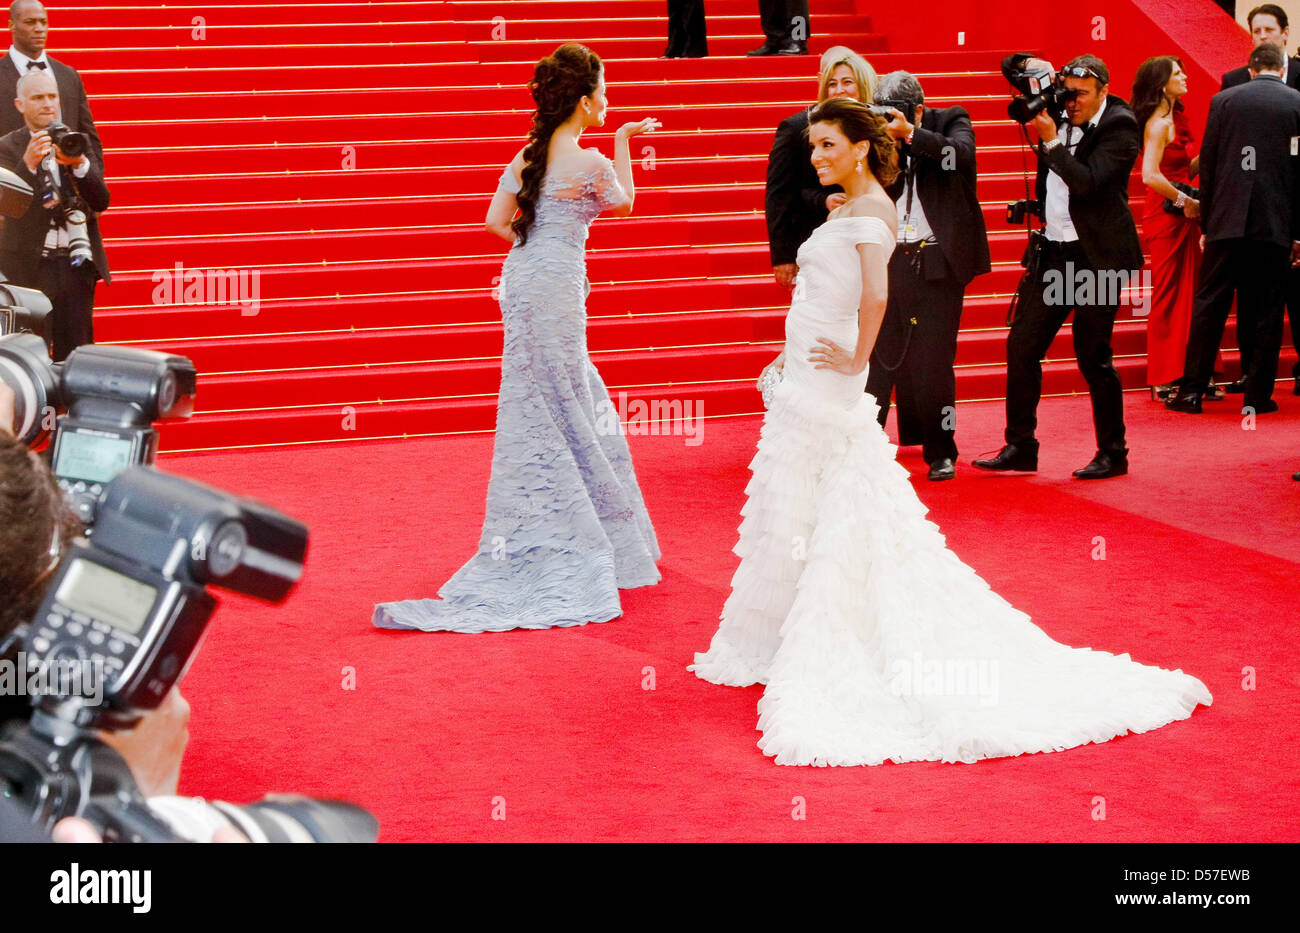 Actrice américaine Eva Longoria (R) et l'actrice indienne Aishwarya Rai arrivent à la cérémonie d'ouverture du 63e Festival du Film de Cannes, France, 12 mai 2010. Le Festival de Cannes 2010 se déroule du 12 au 23 mai 2010. Photo : Hubert Boesl Banque D'Images